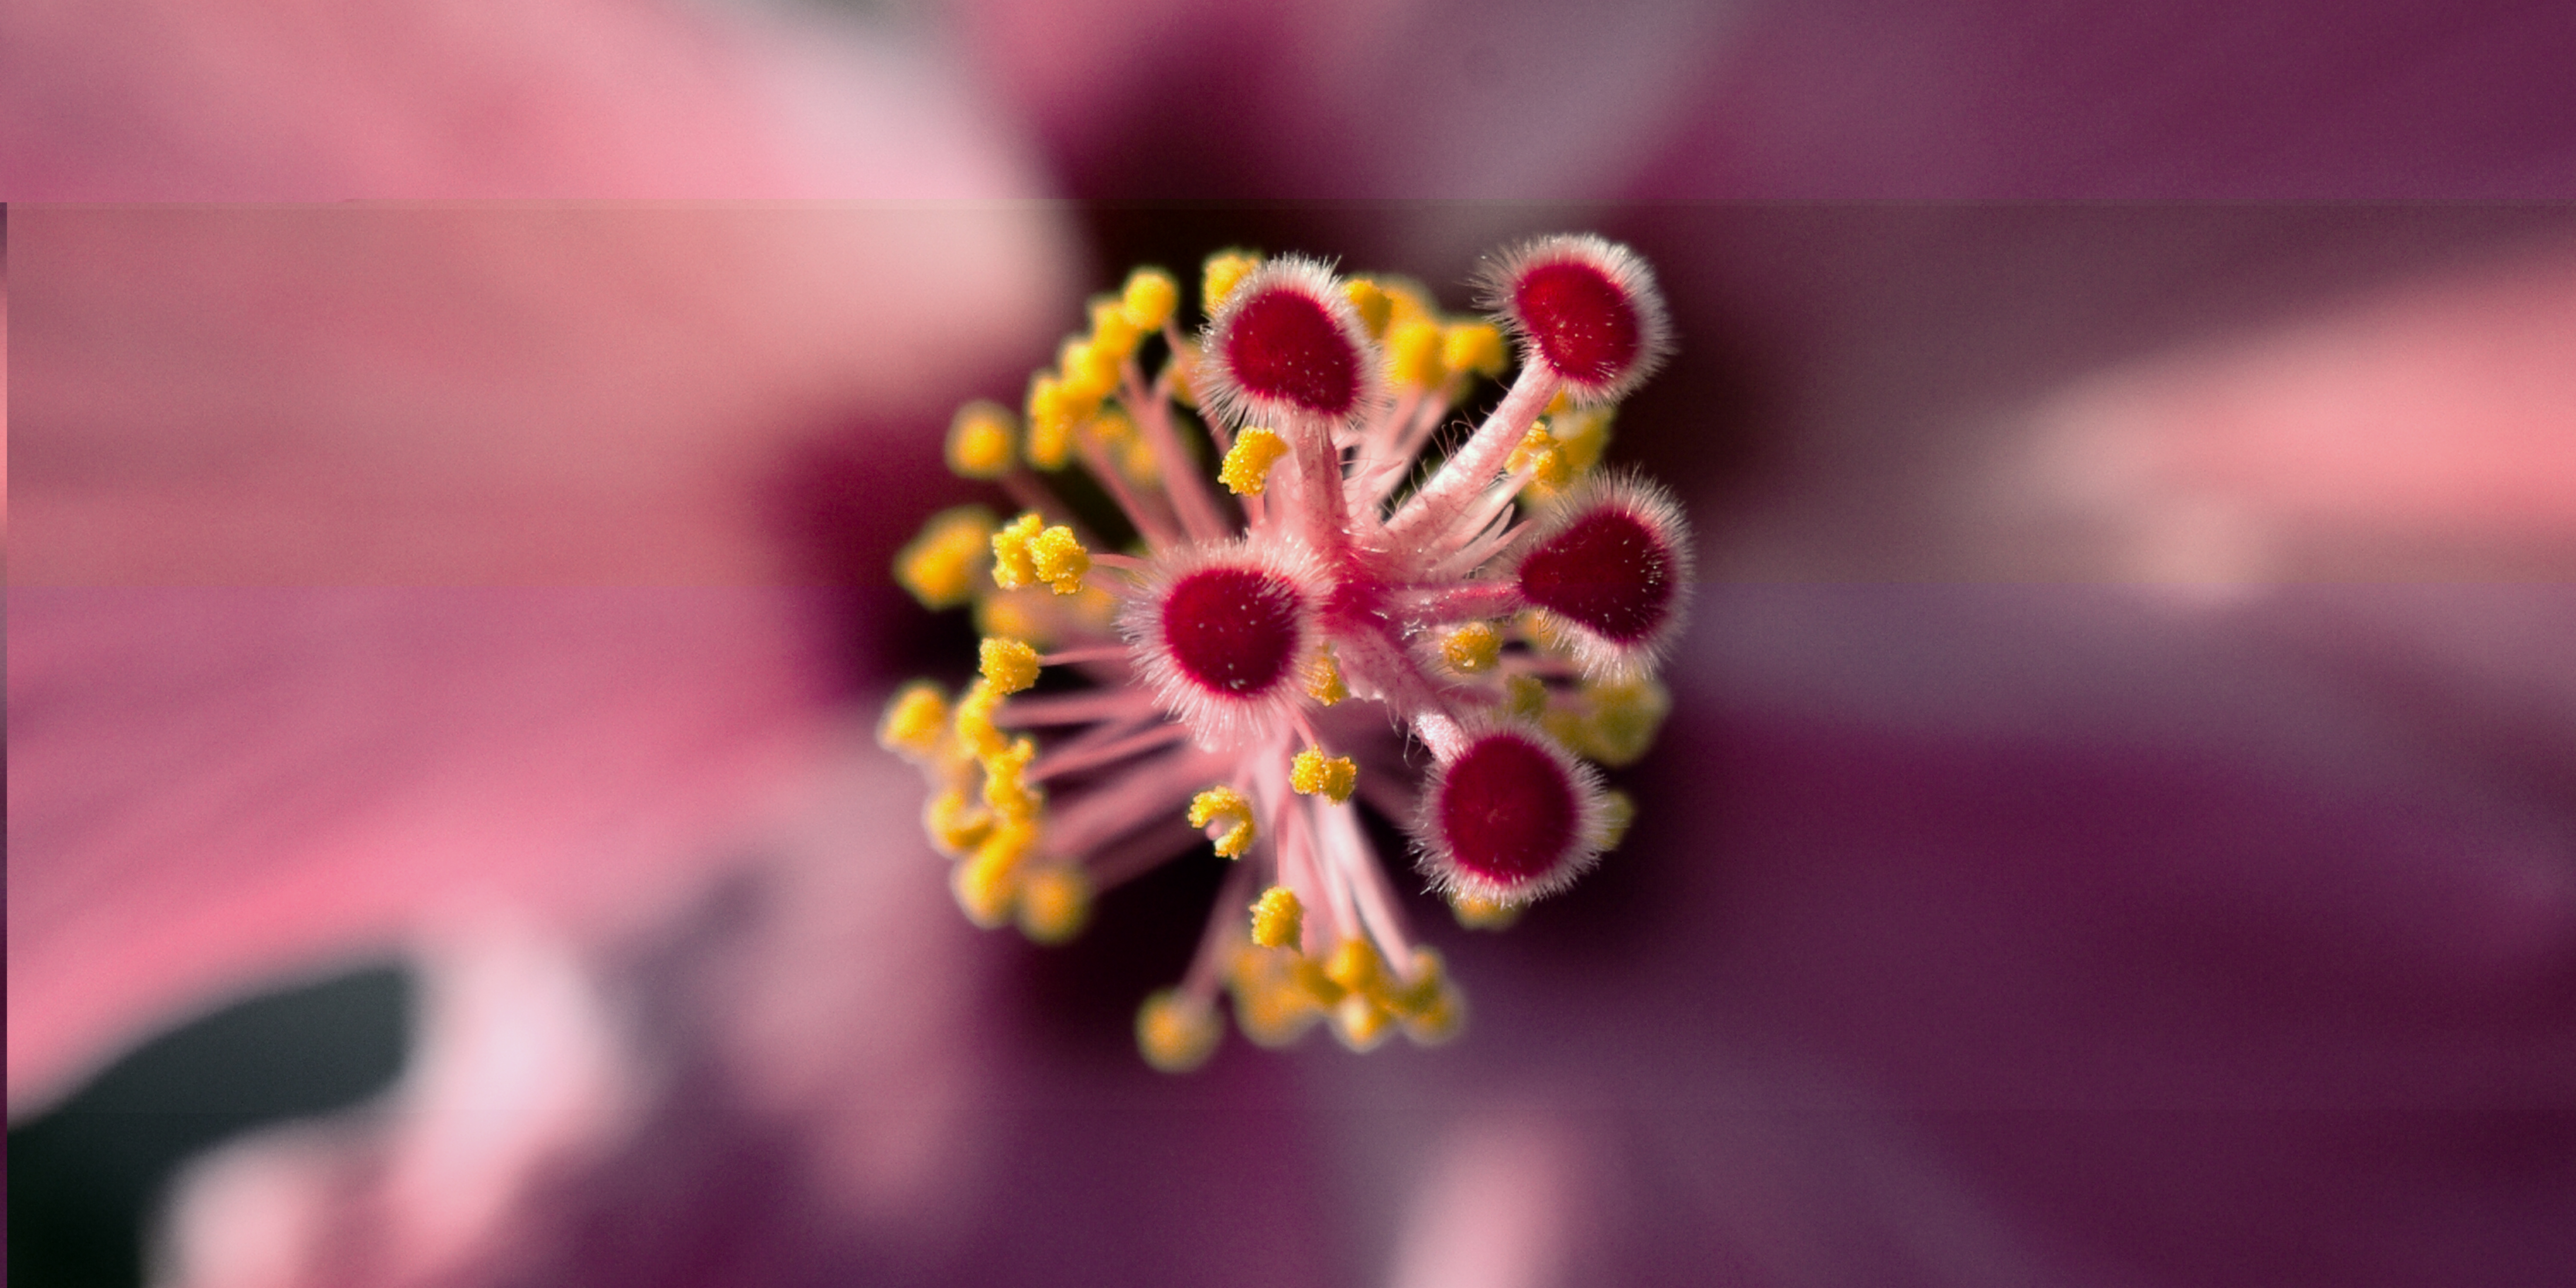 Hibiscus photo